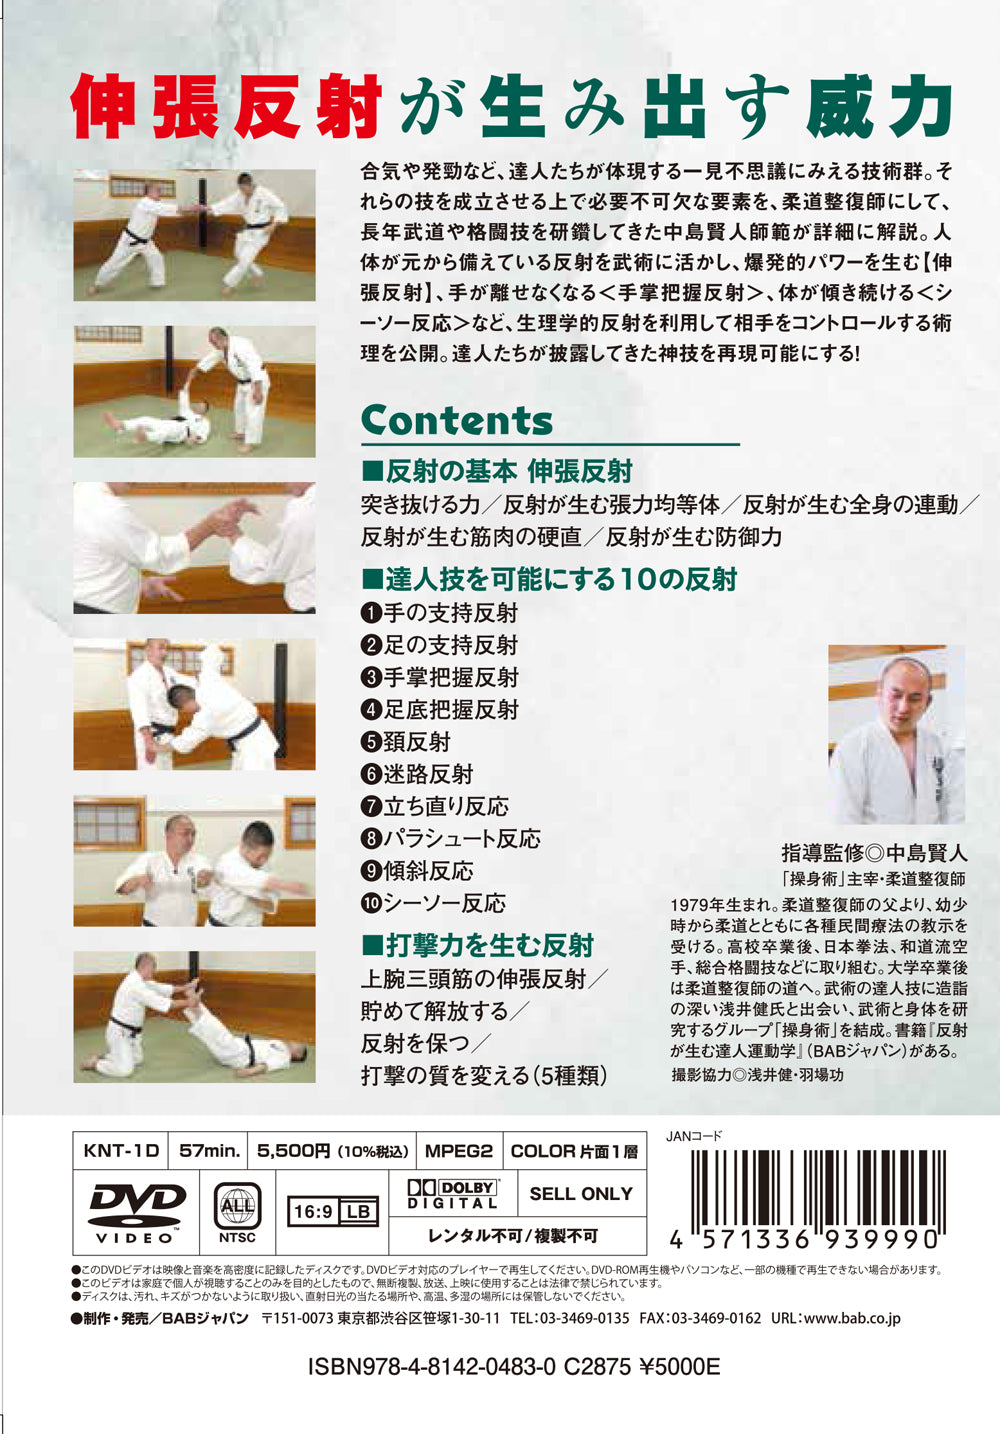 Soshinjutsu: Técnicas que utilizan el DVD de reflejos musculares de Kento Nakajima